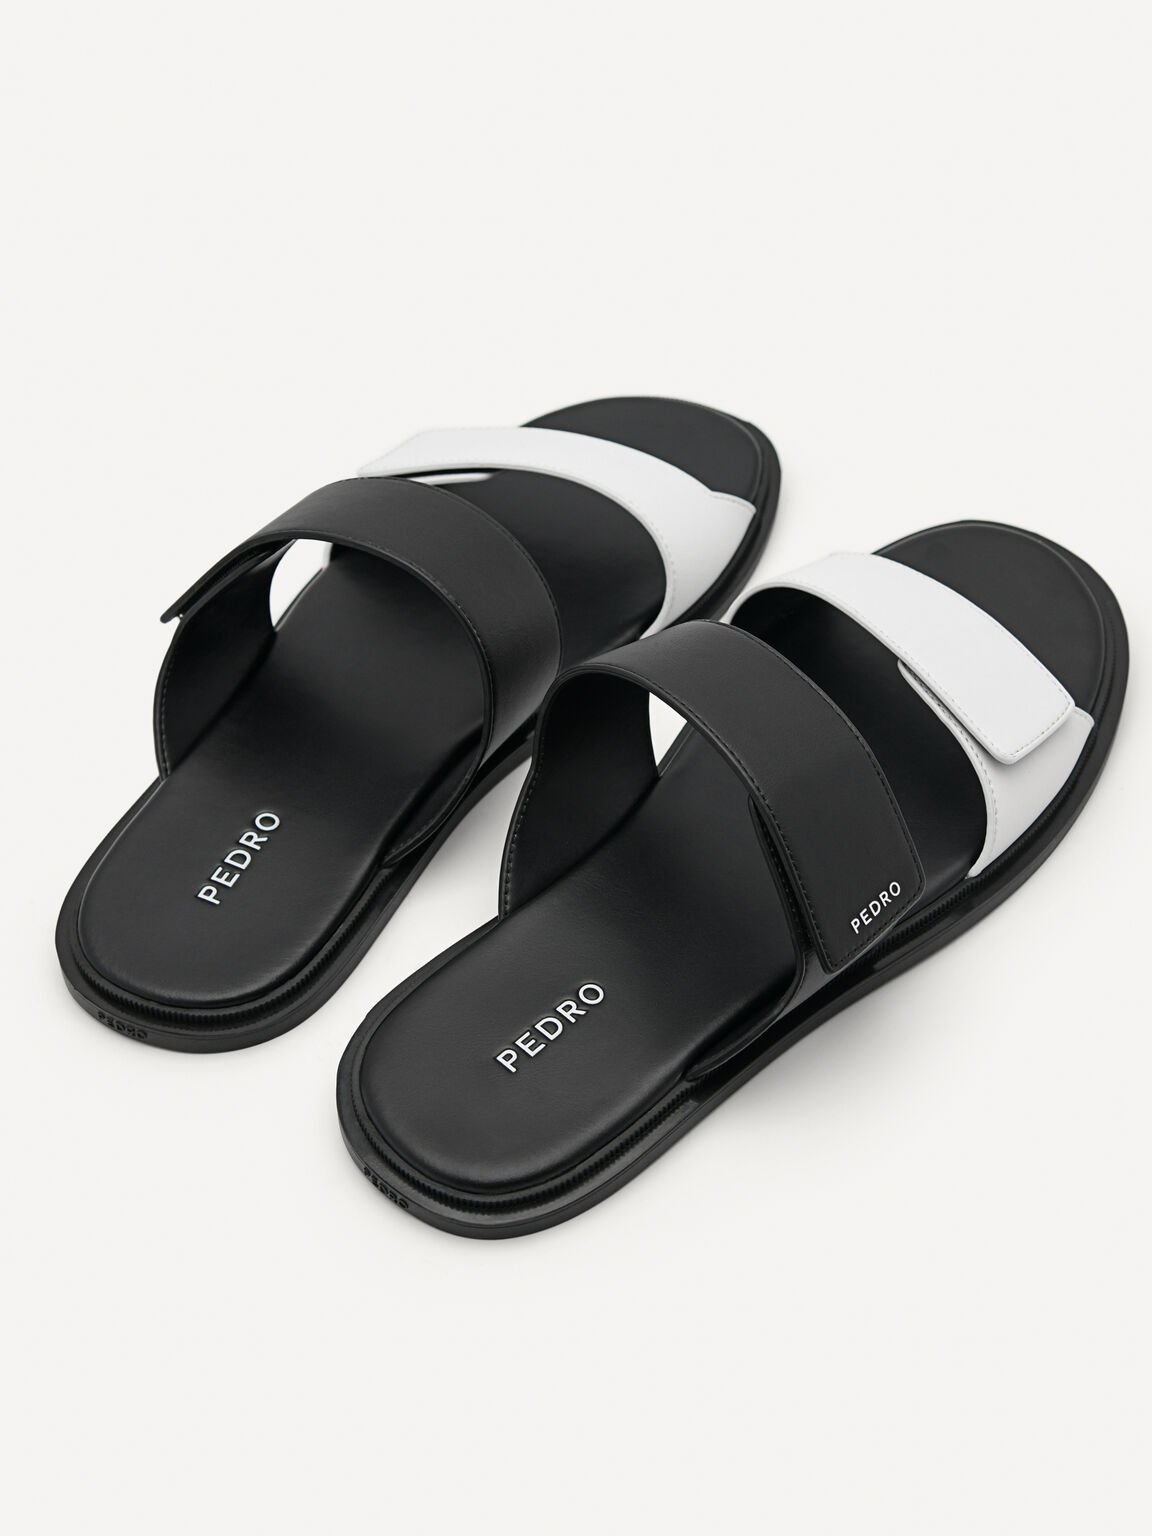 Stride Slide Sandals, Black, hi-res